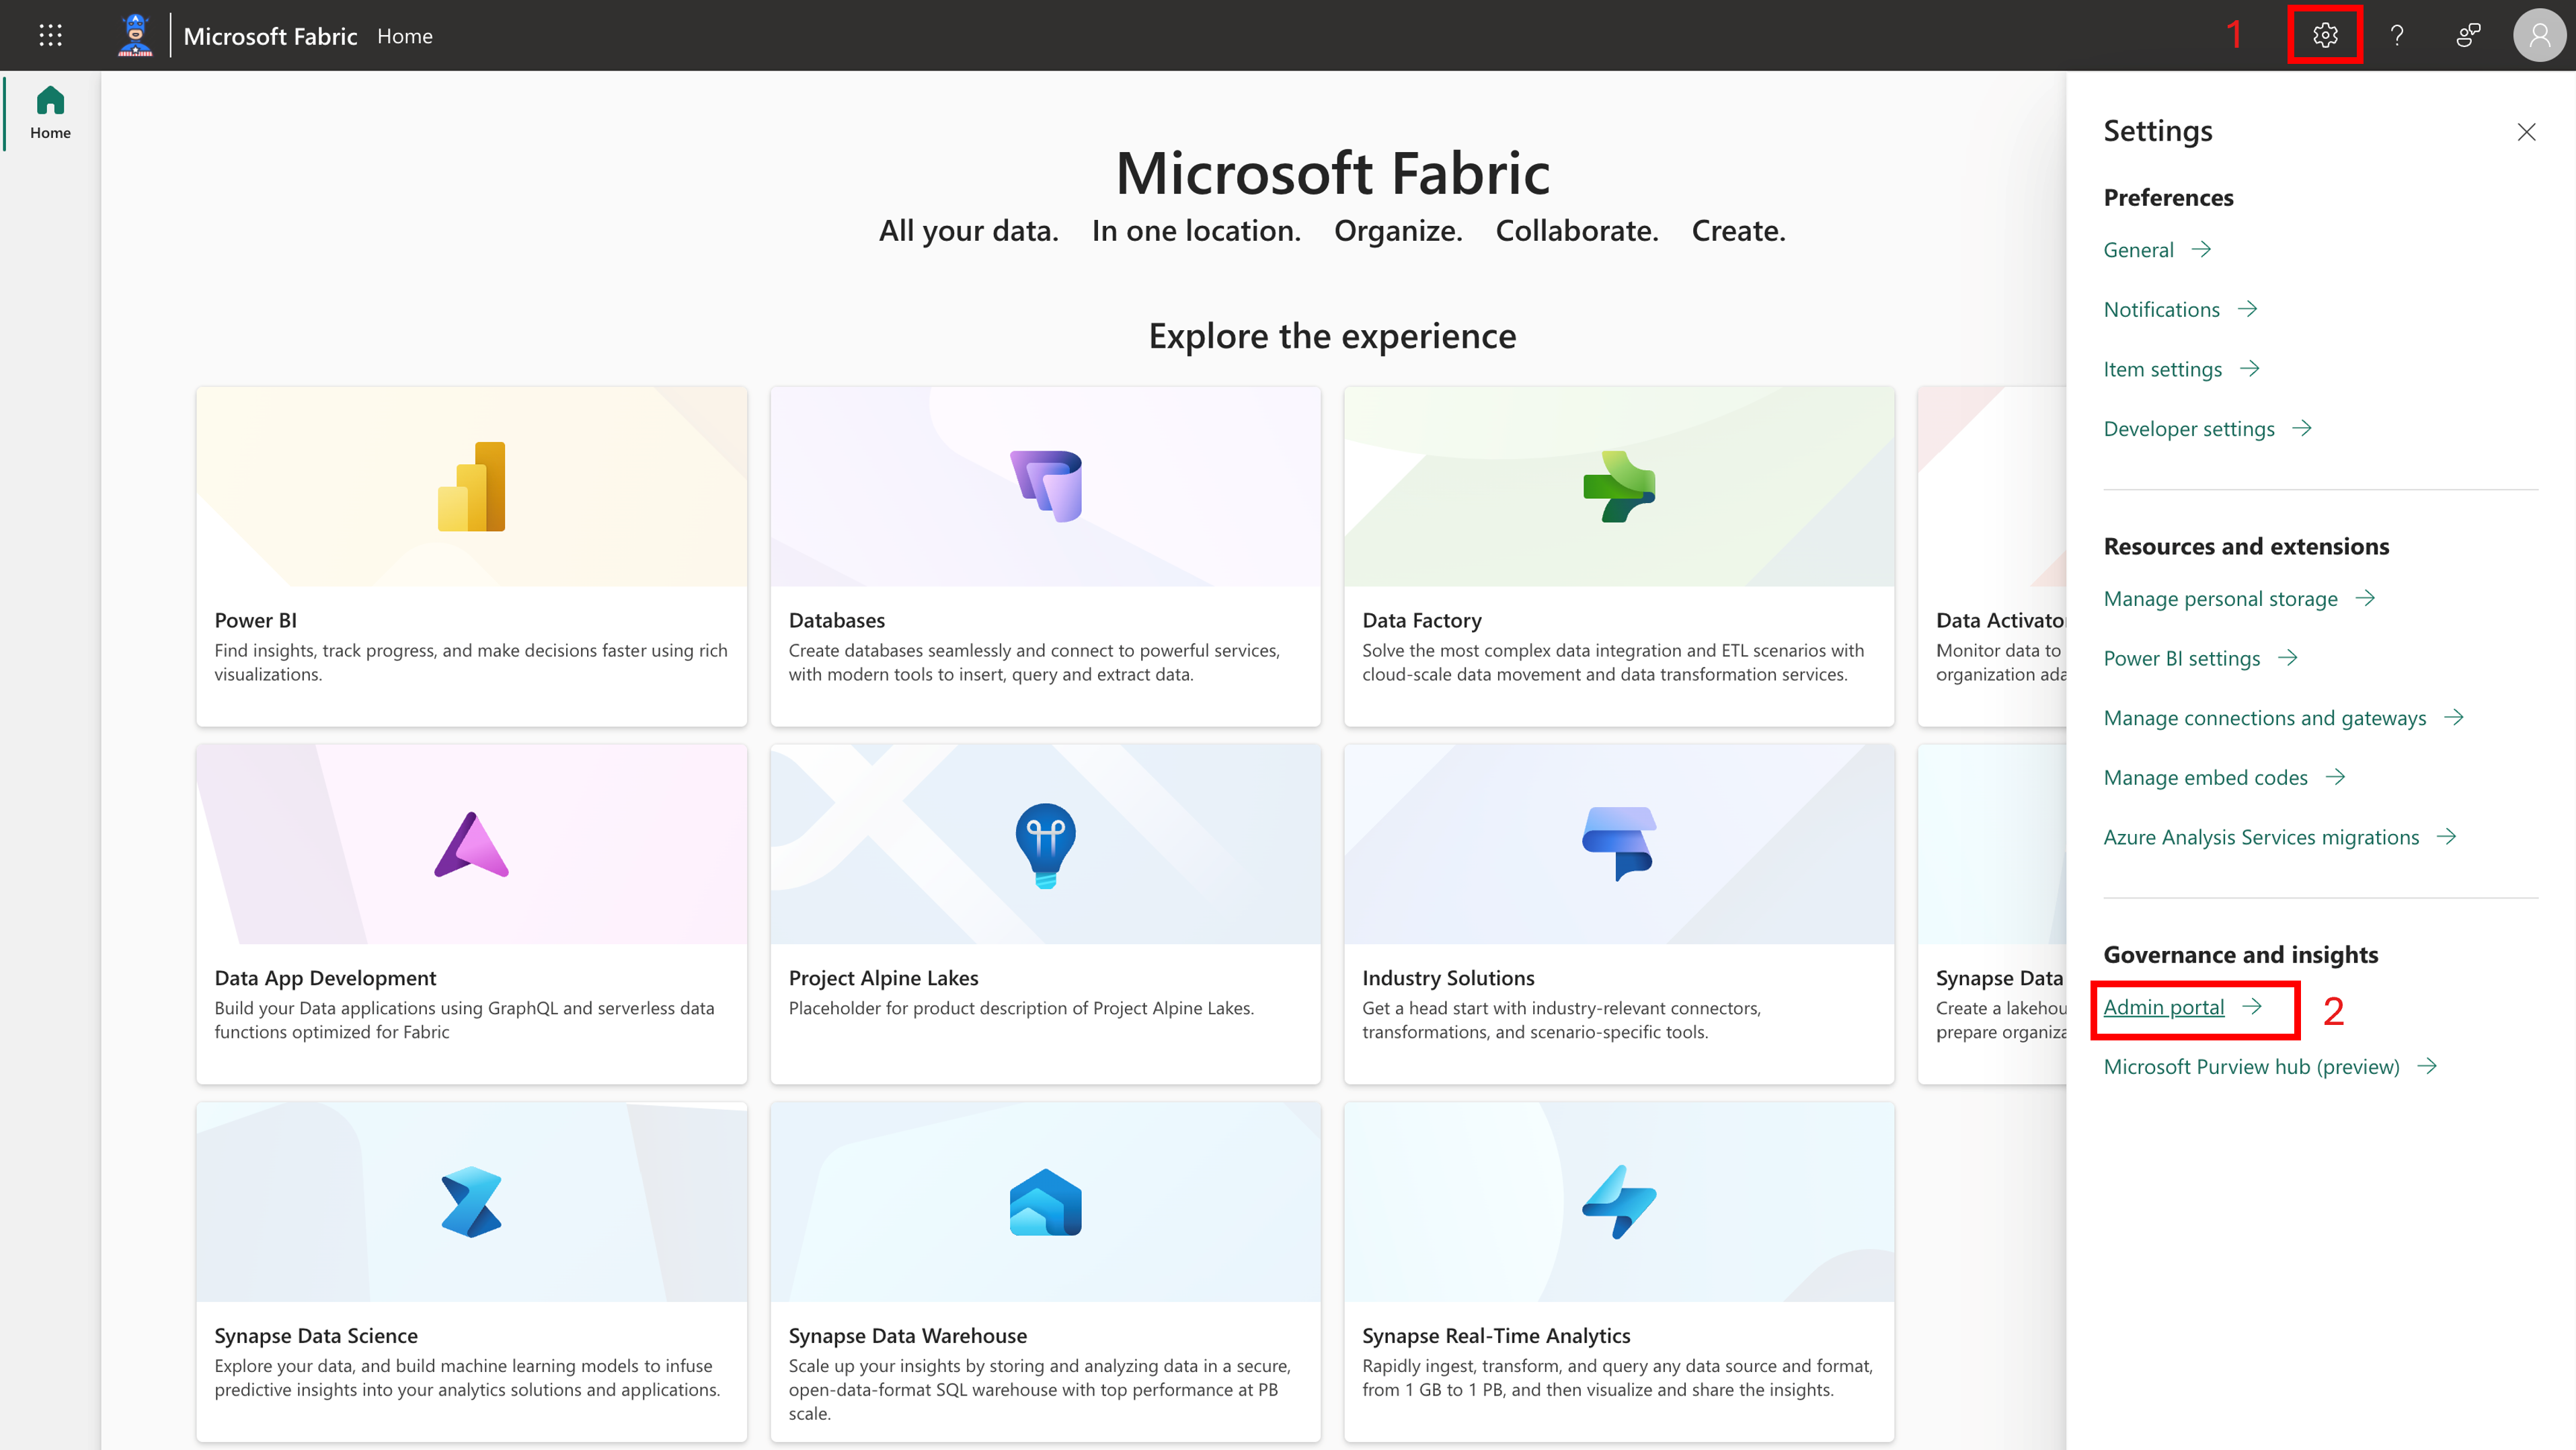 Capture d’écran montrant l’icône d’engrenage et l’accès au portail d’administration depuis la page d’accueil Microsoft Fabric.